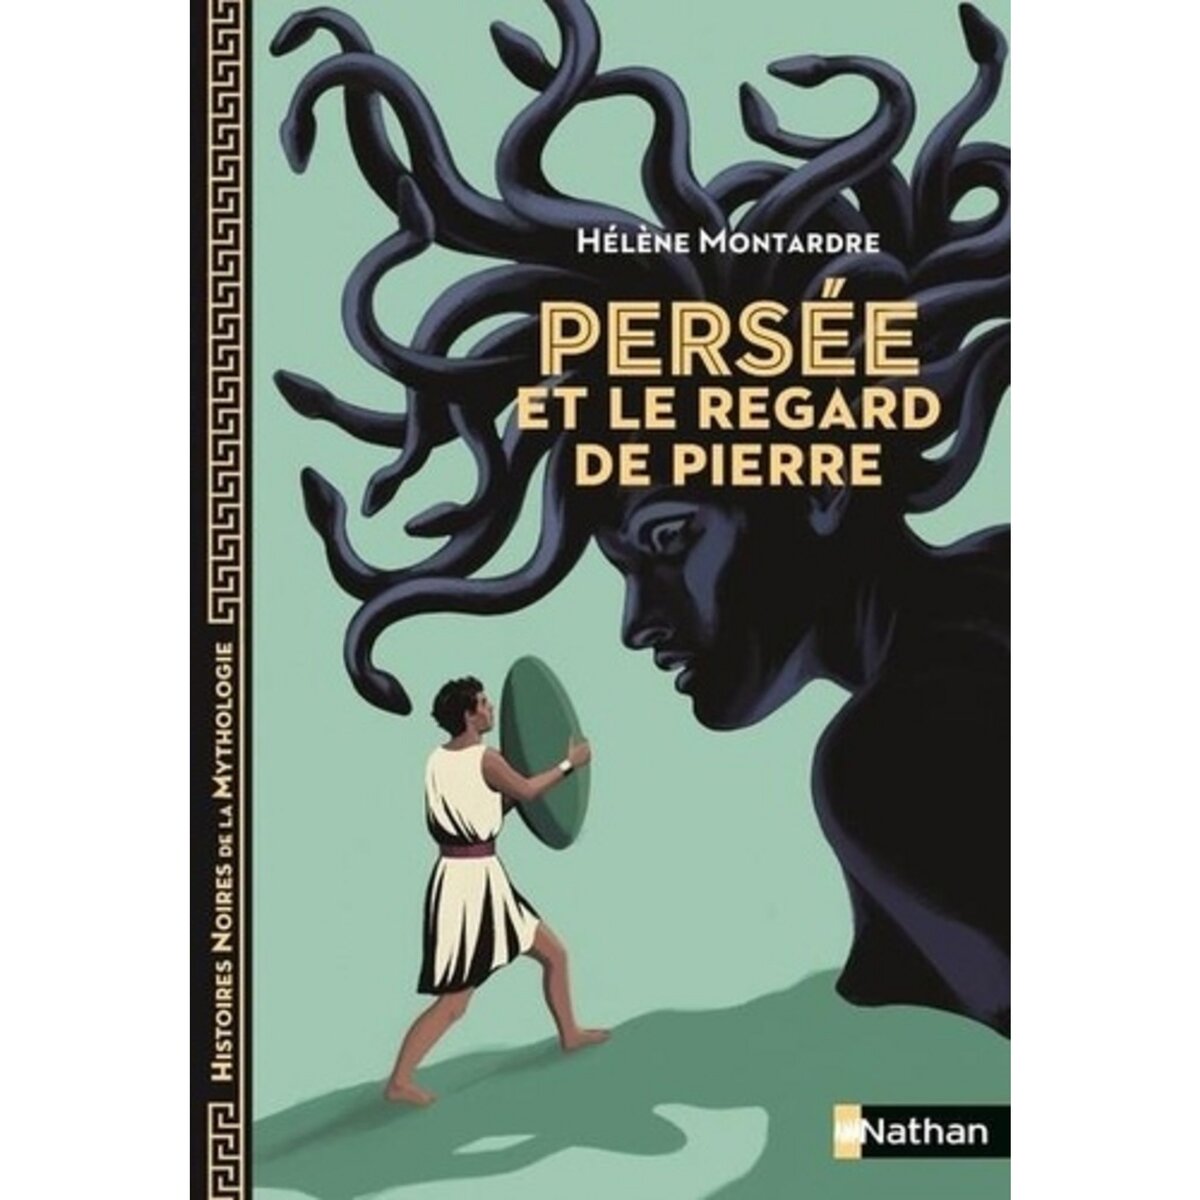  PERSEE ET LE REGARD DE PIERRE, Montardre Hélène